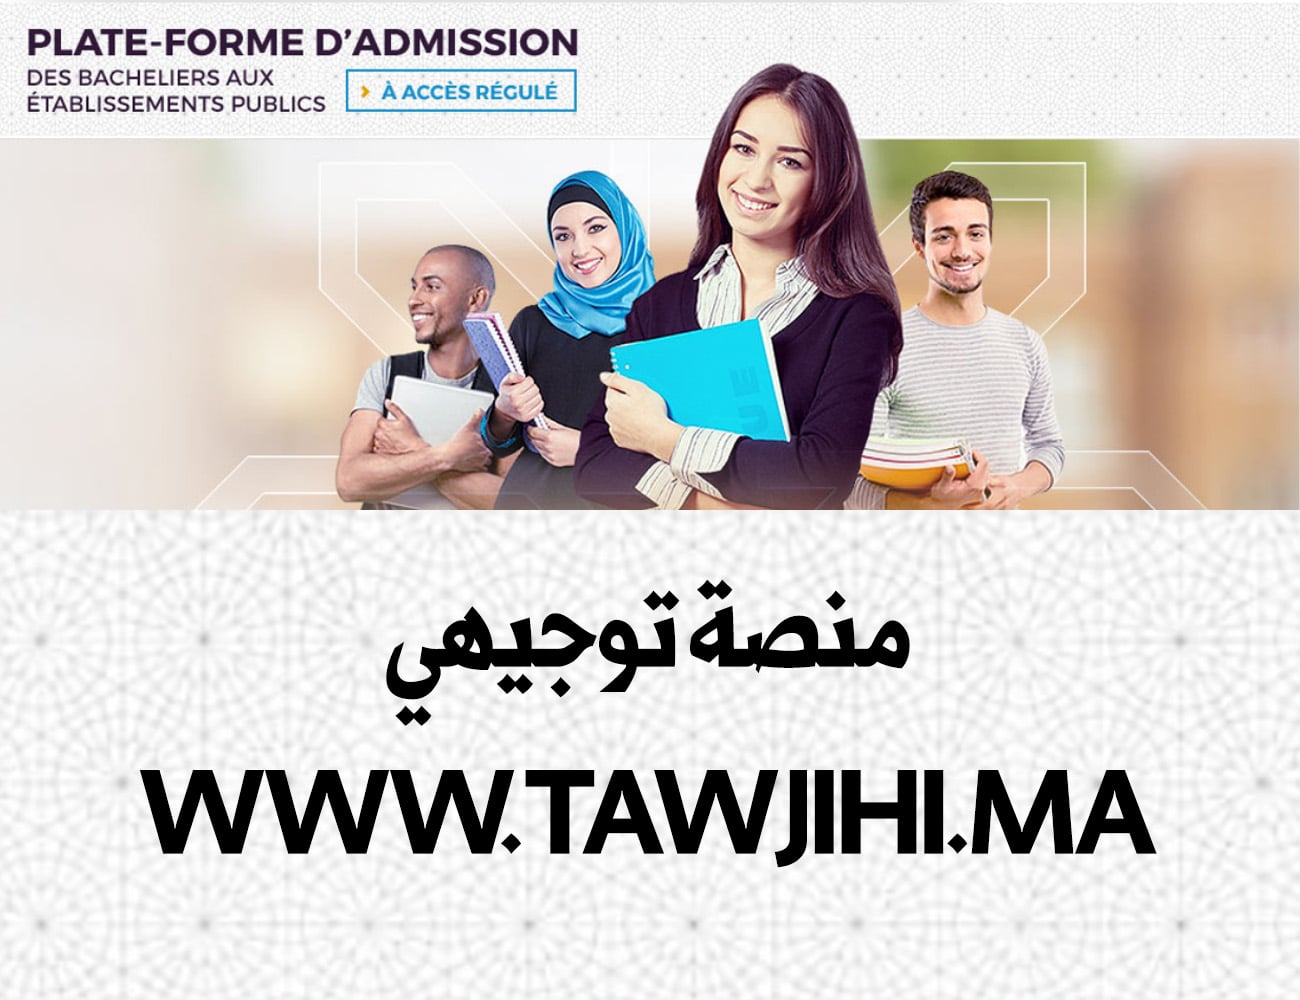 منصة توجيهي www.tawjihi.ma بوابة ولوج المؤسسات الجامعية ذات الإستقطاب المحدود